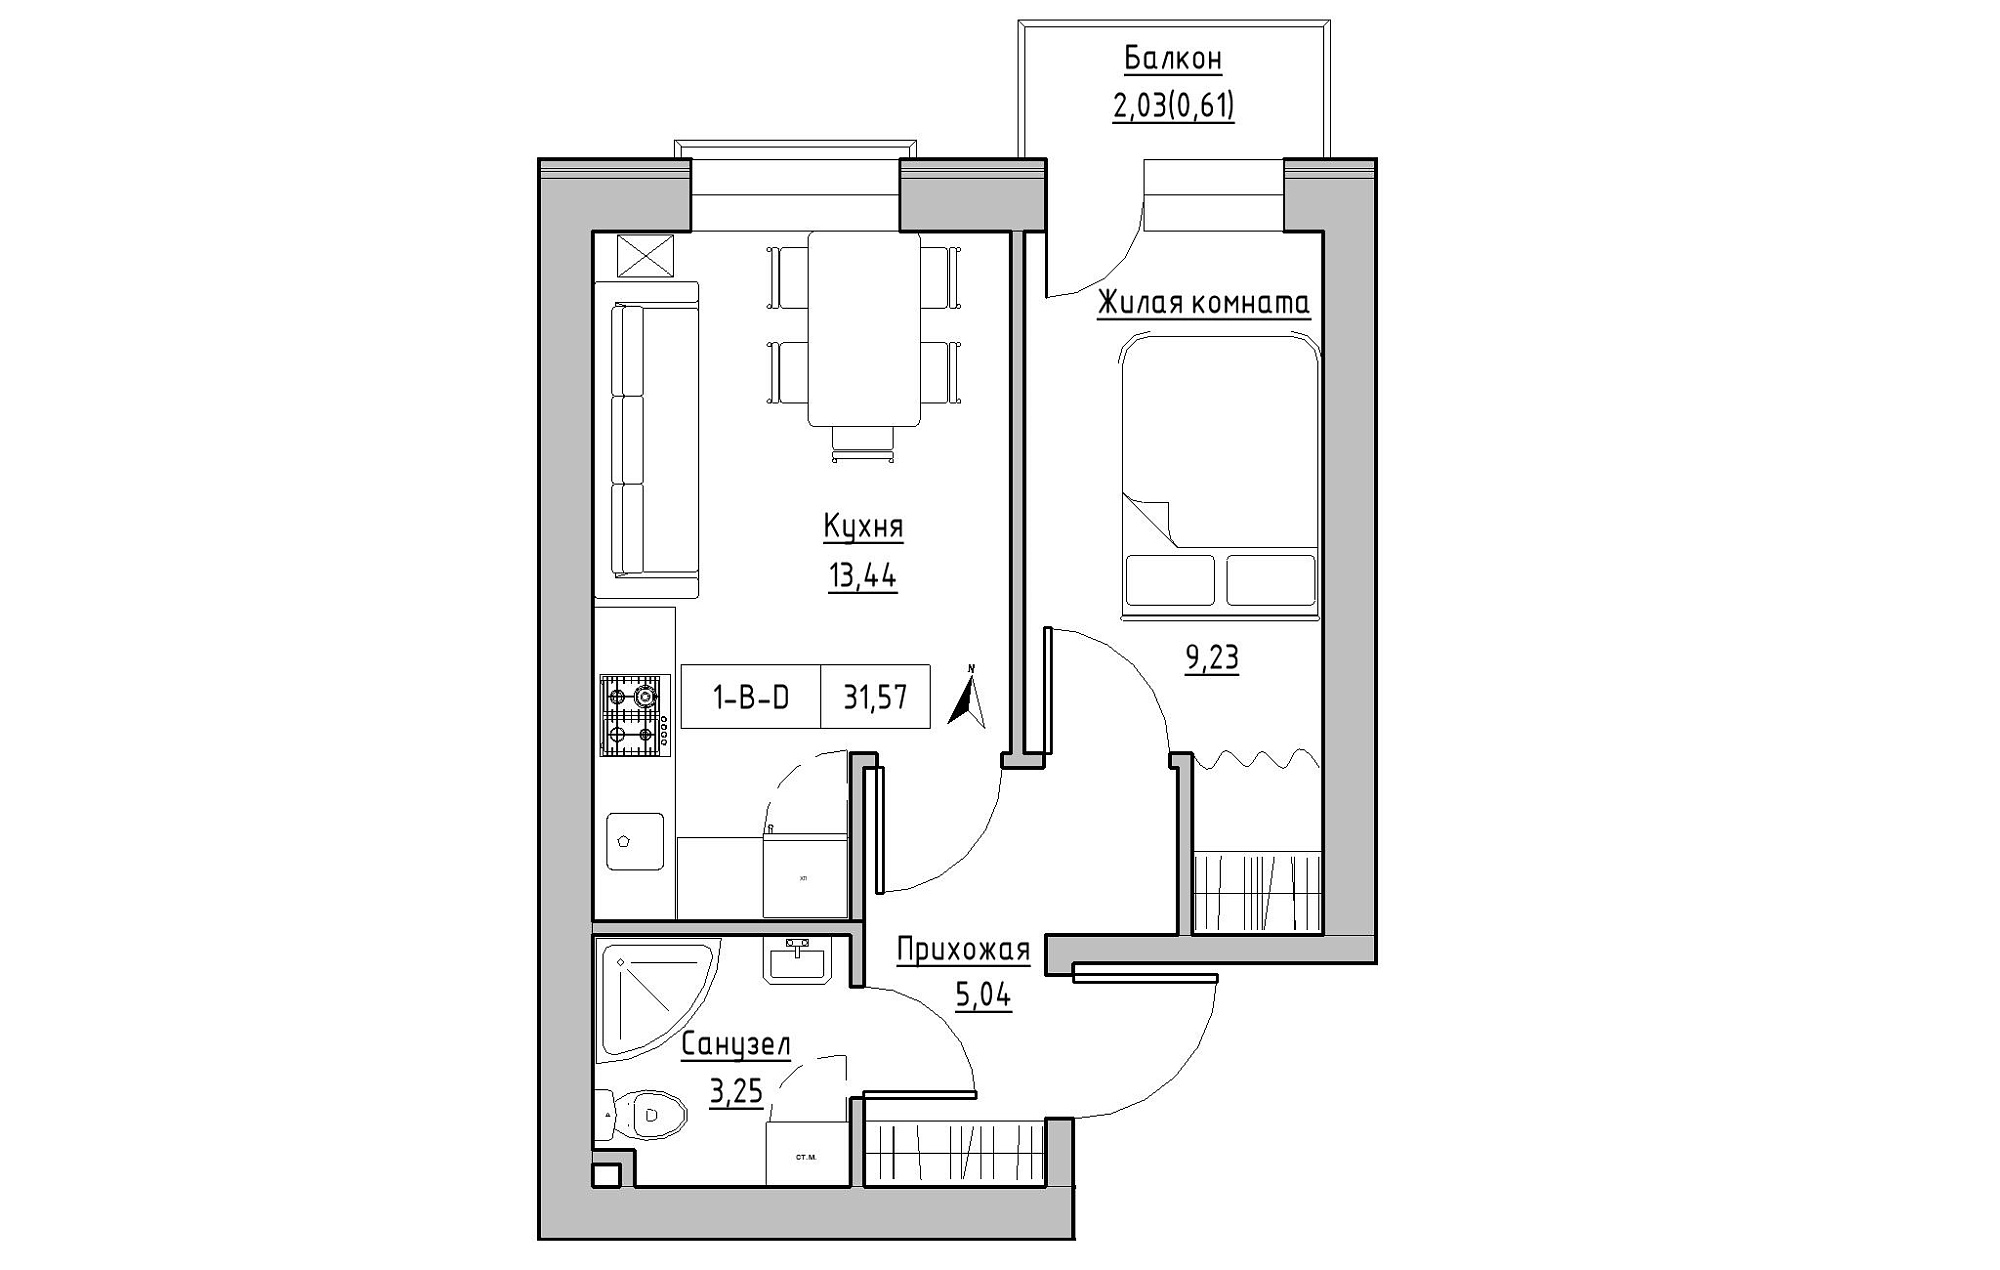 Планування 1-к квартира площею 31.57м2, KS-019-03/0013.